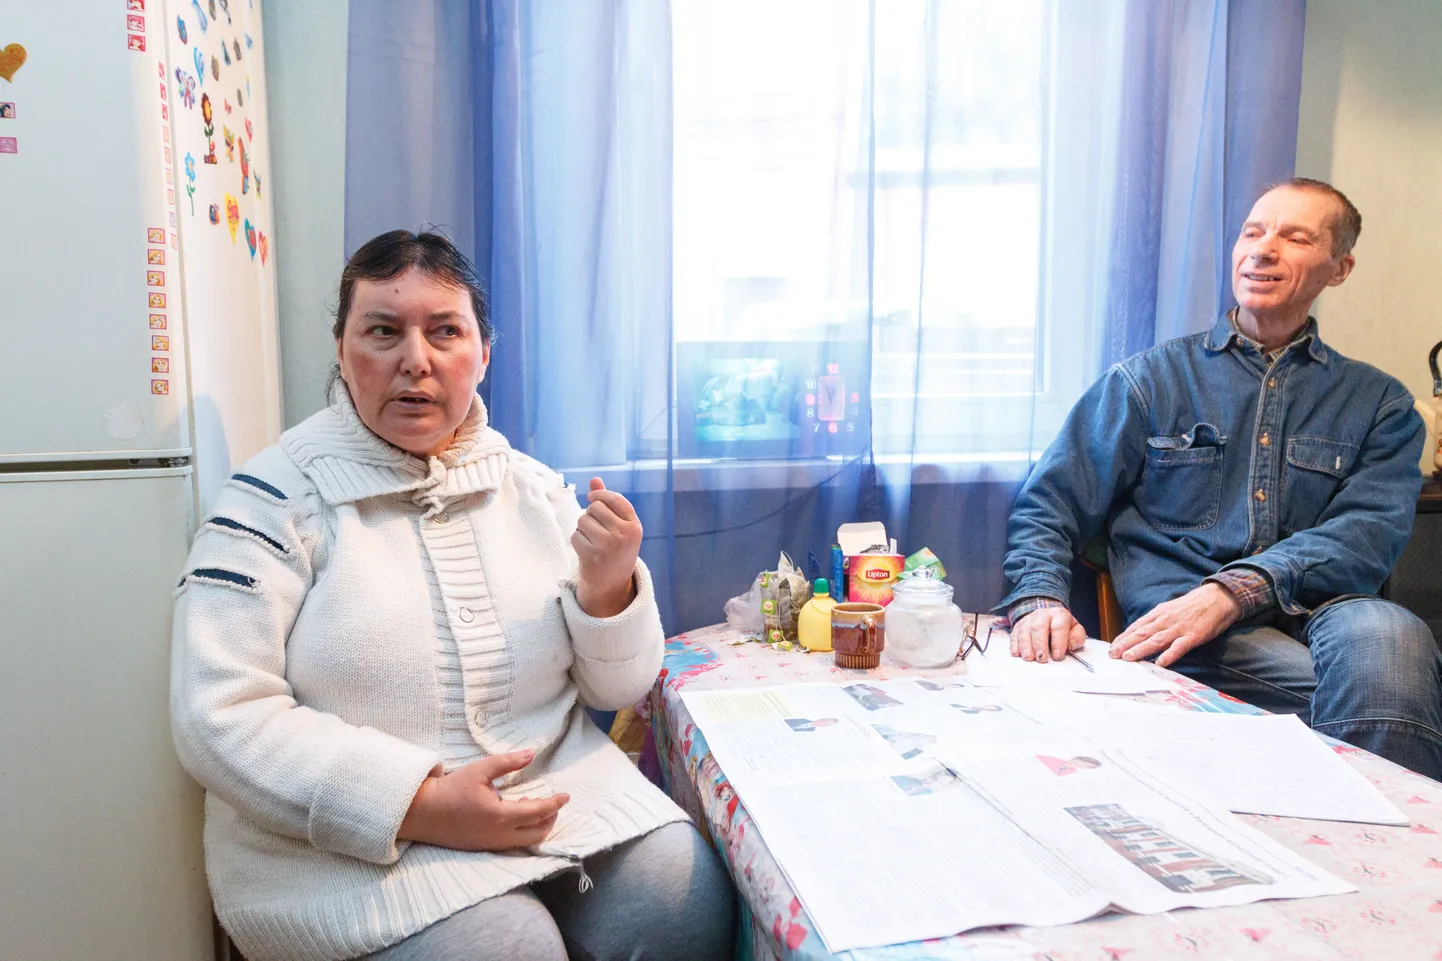 Valgalased Viktor Voronkov ja Irina Susan Arževskaja-Voronkova rääkisid toimetusele oma versiooni Lembitu tänaval asuvast käigust toidupaki järele, mis pakkunud häiriva kogemuse.